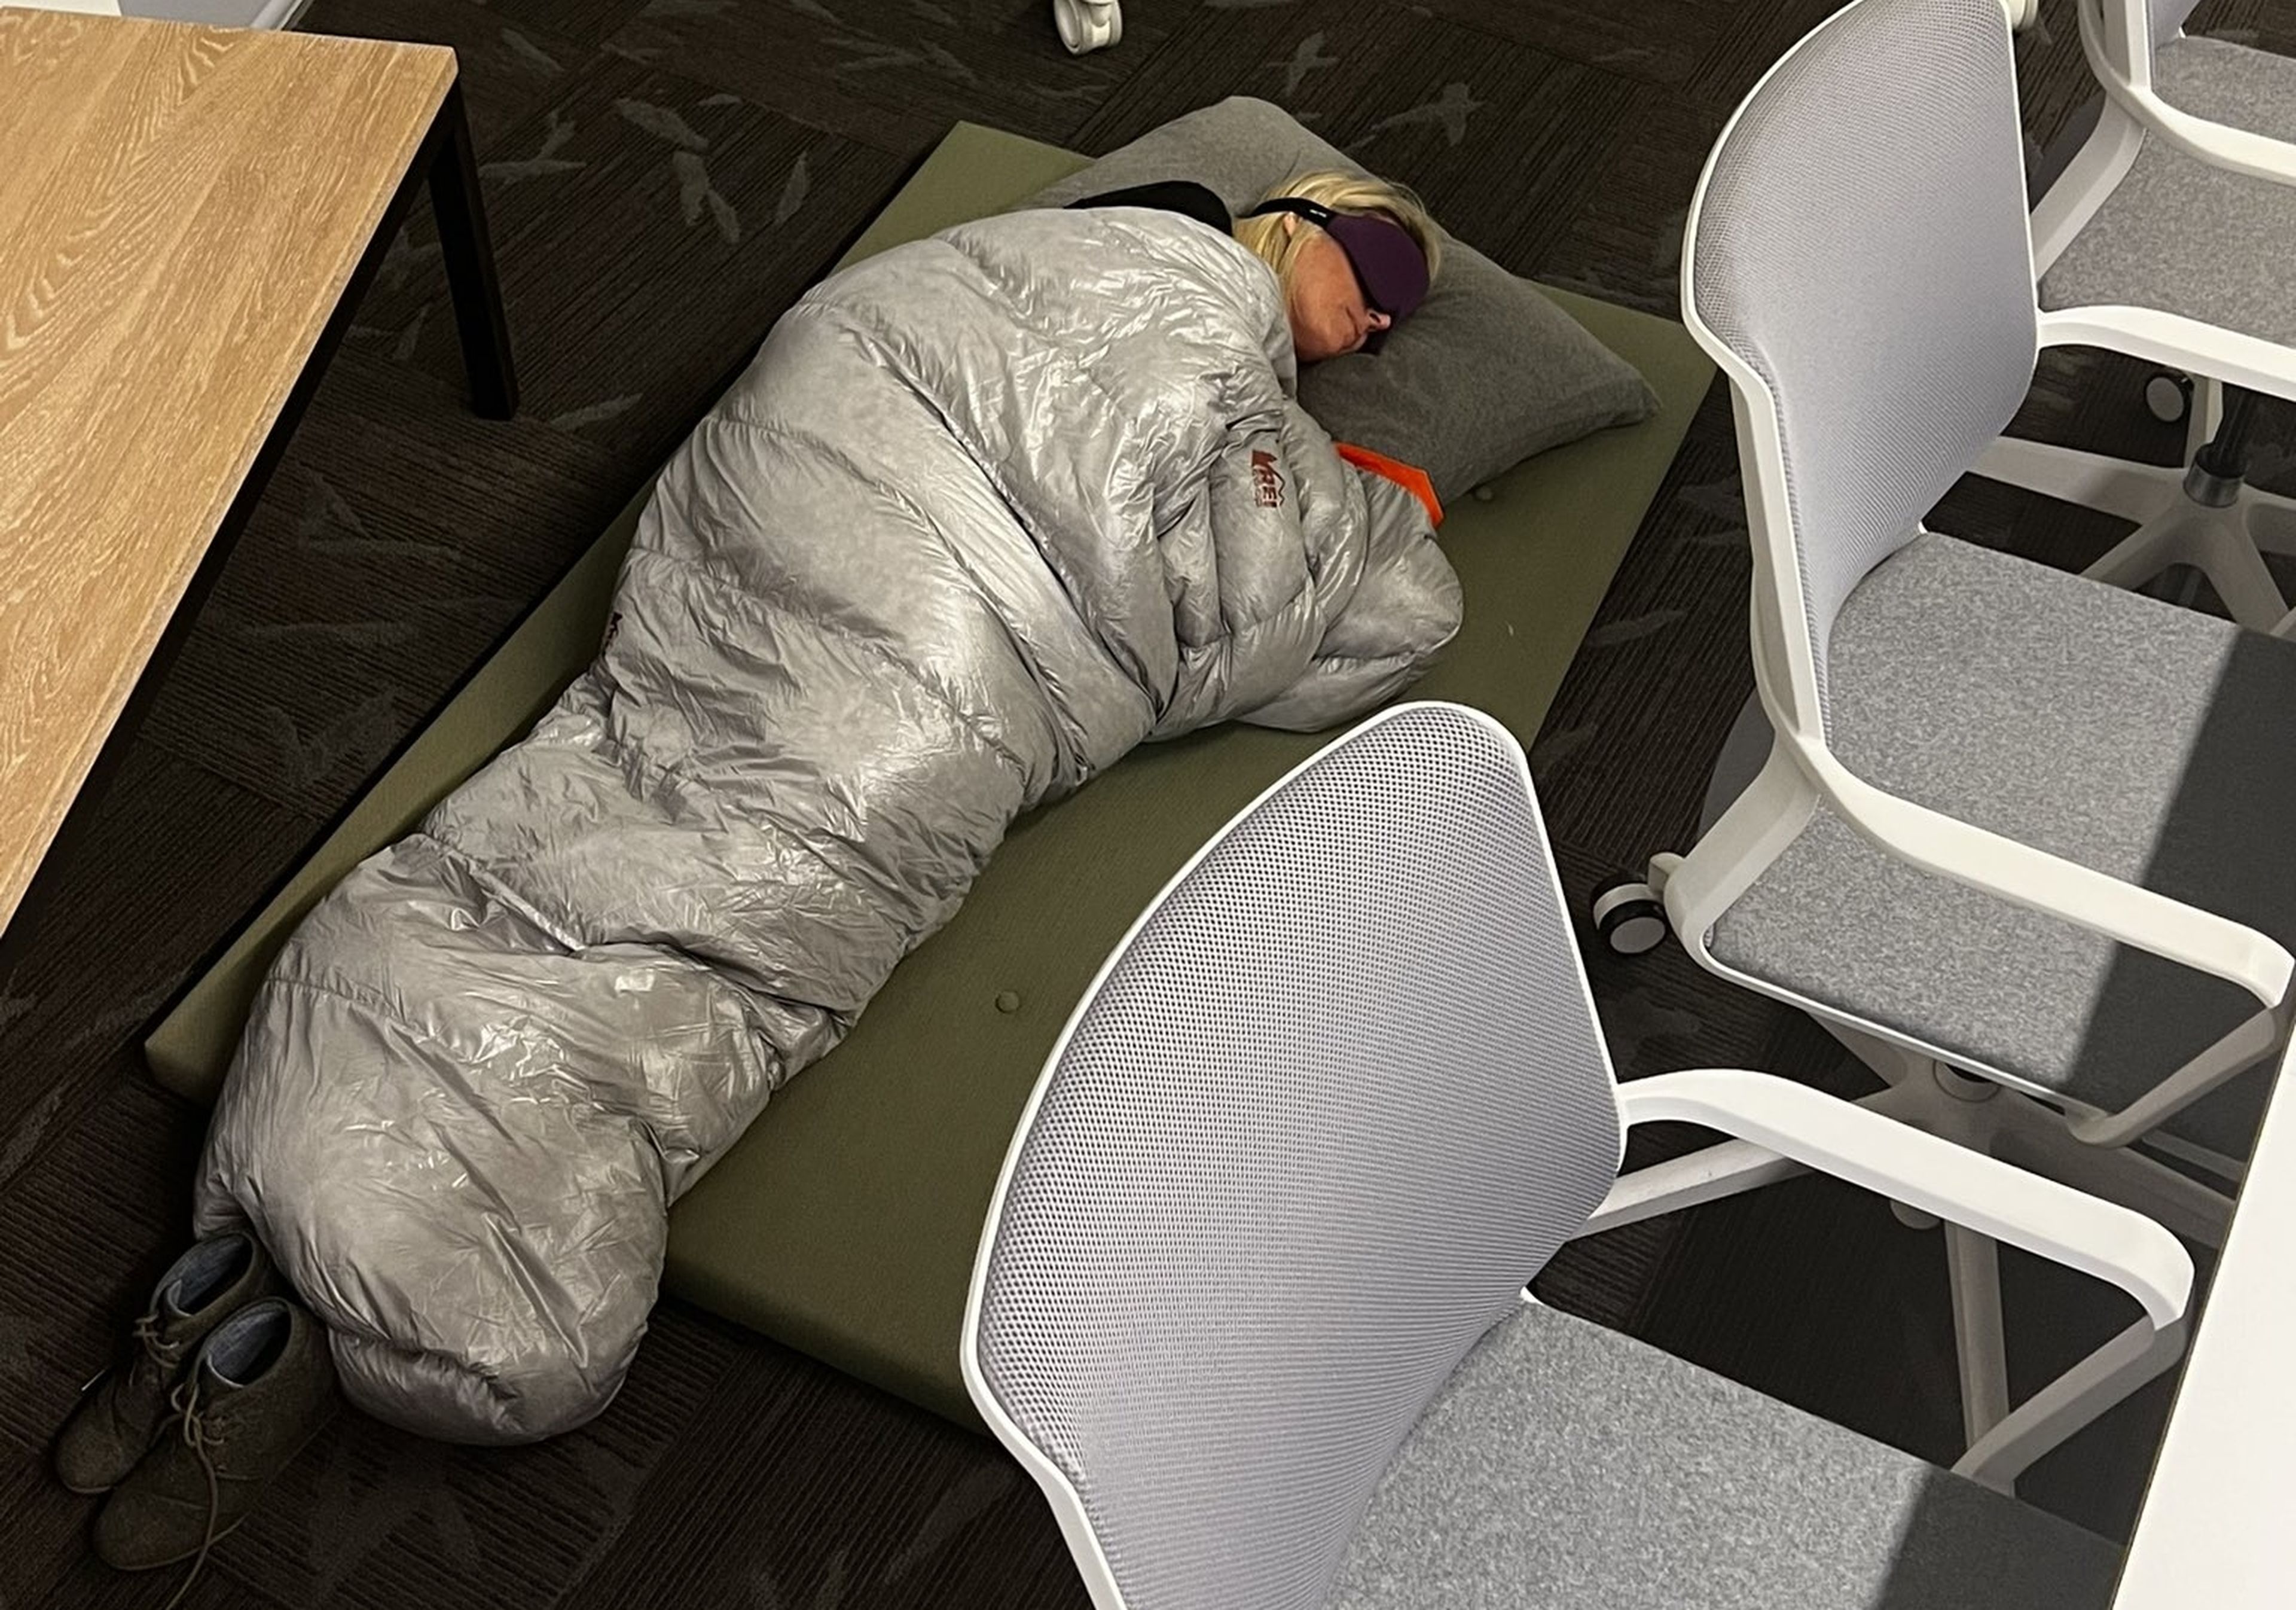 Los empleados de Twitter están durmiendo en la oficina para cumplir las exigencias de Elon Musk